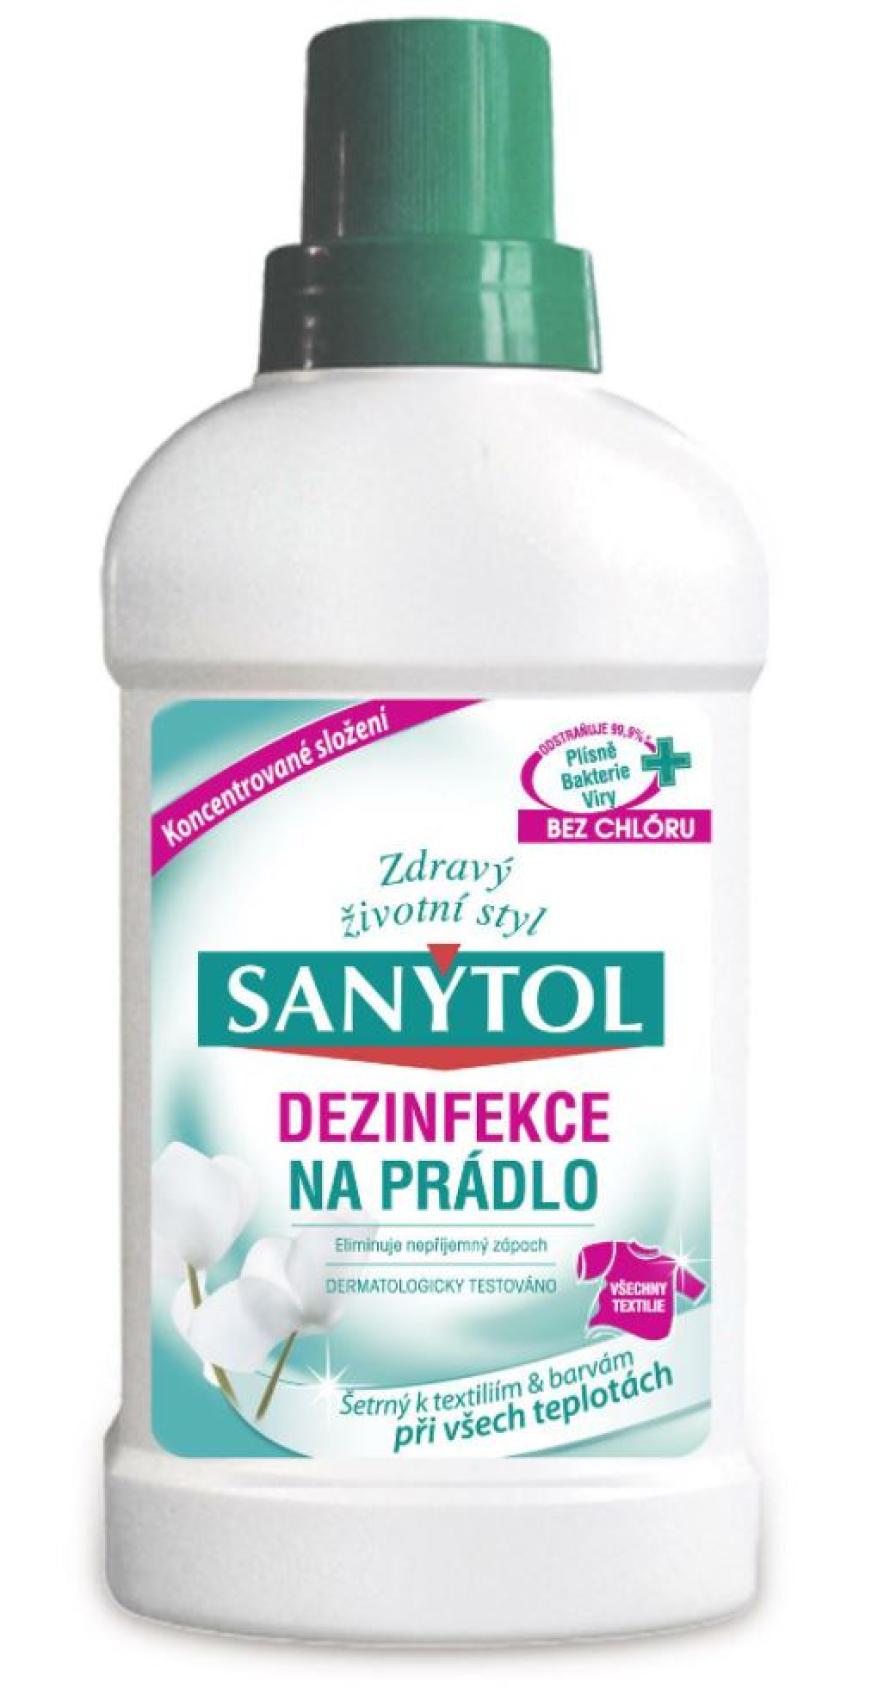 Sanytol dezinfekce na prdlo 500ml - Kliknutm na obrzek zavete